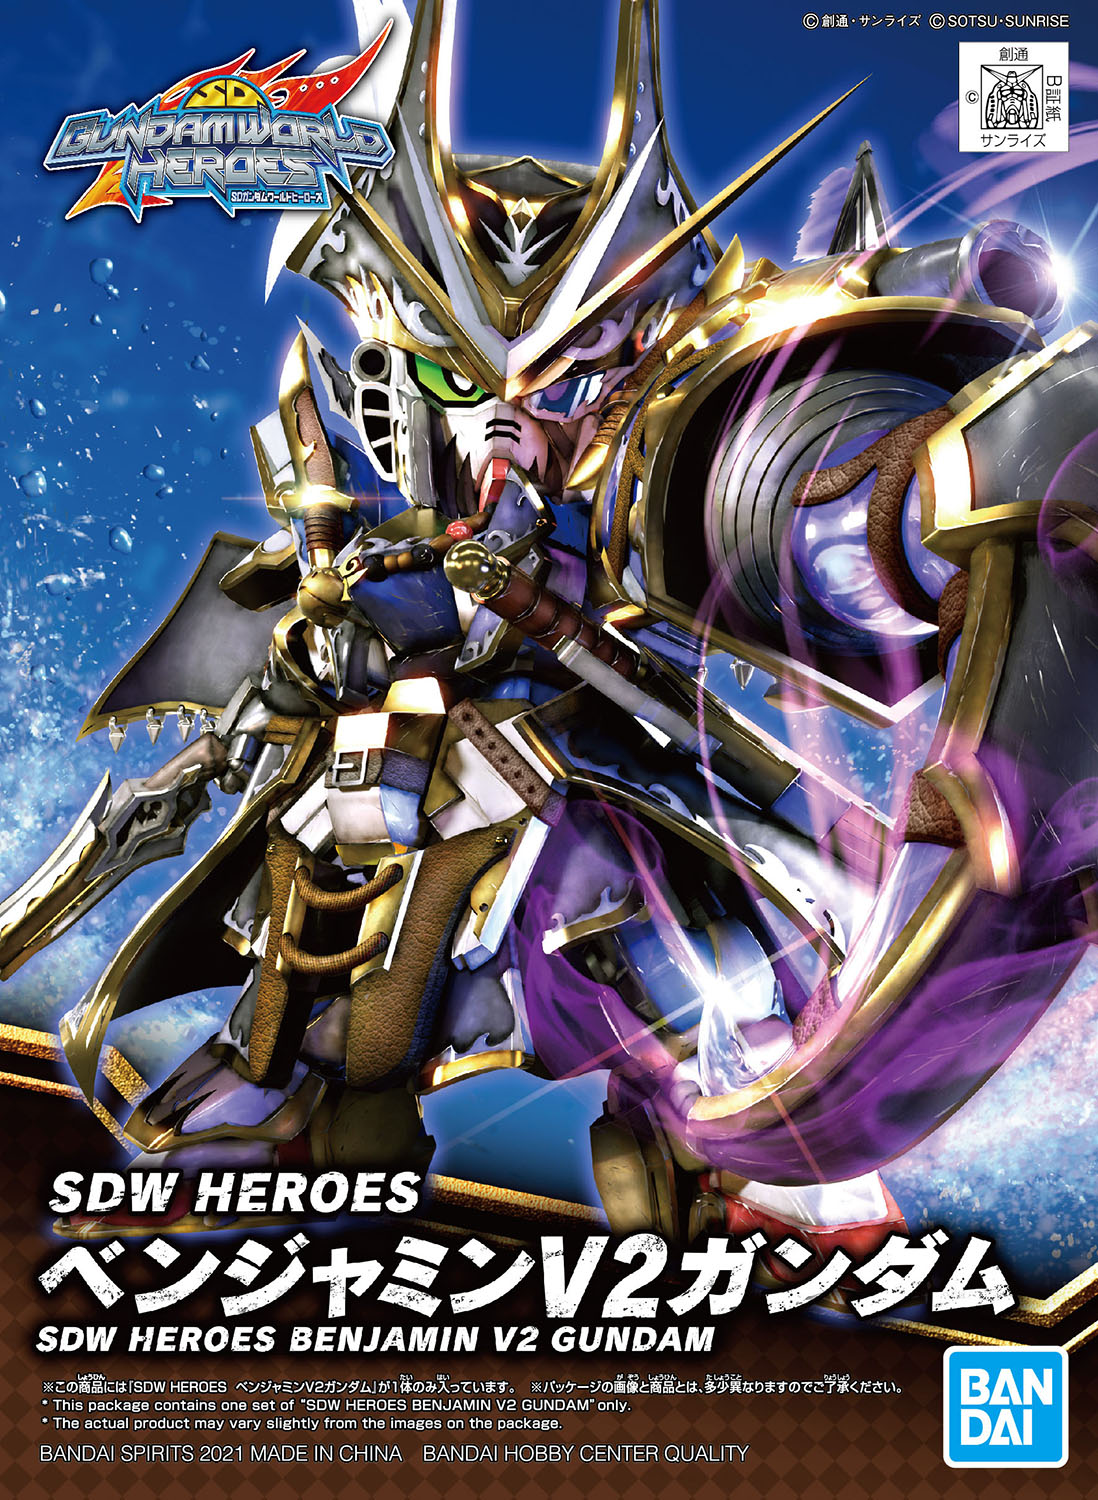 SD World Heroes - Benjamin V2 Gundam